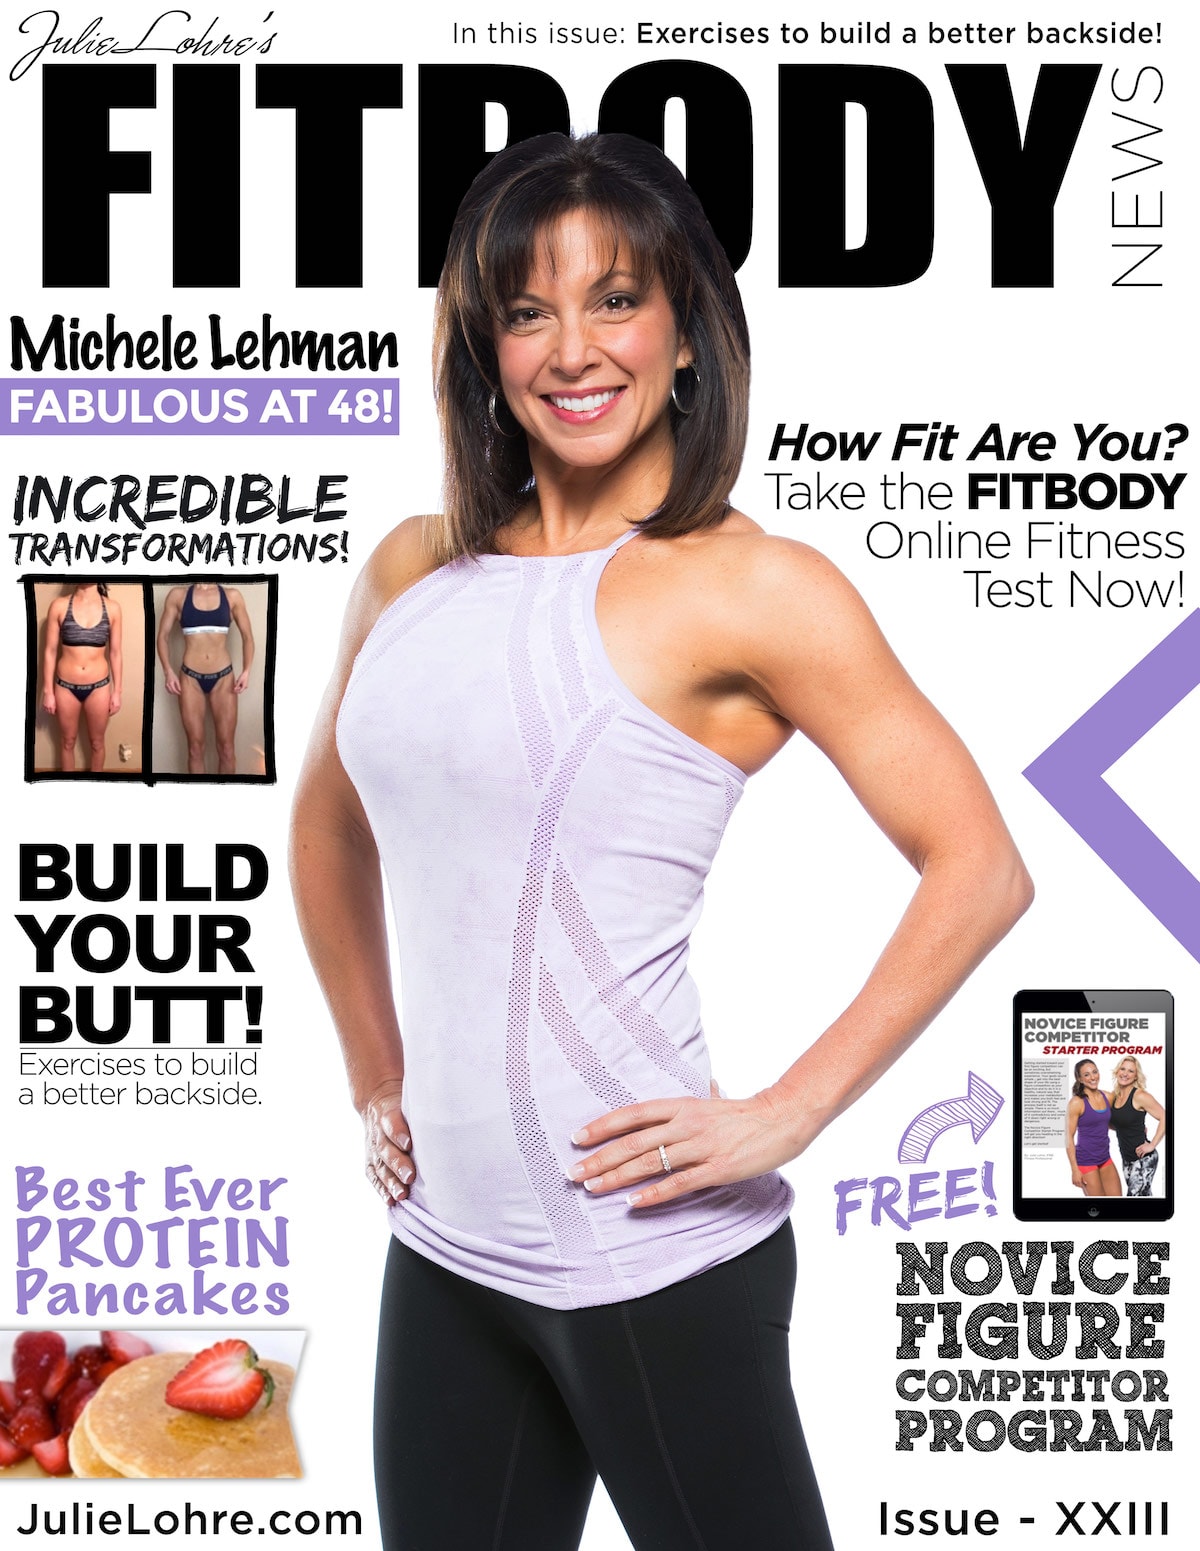 Fit body News Magazine XXIII Michele Lehman